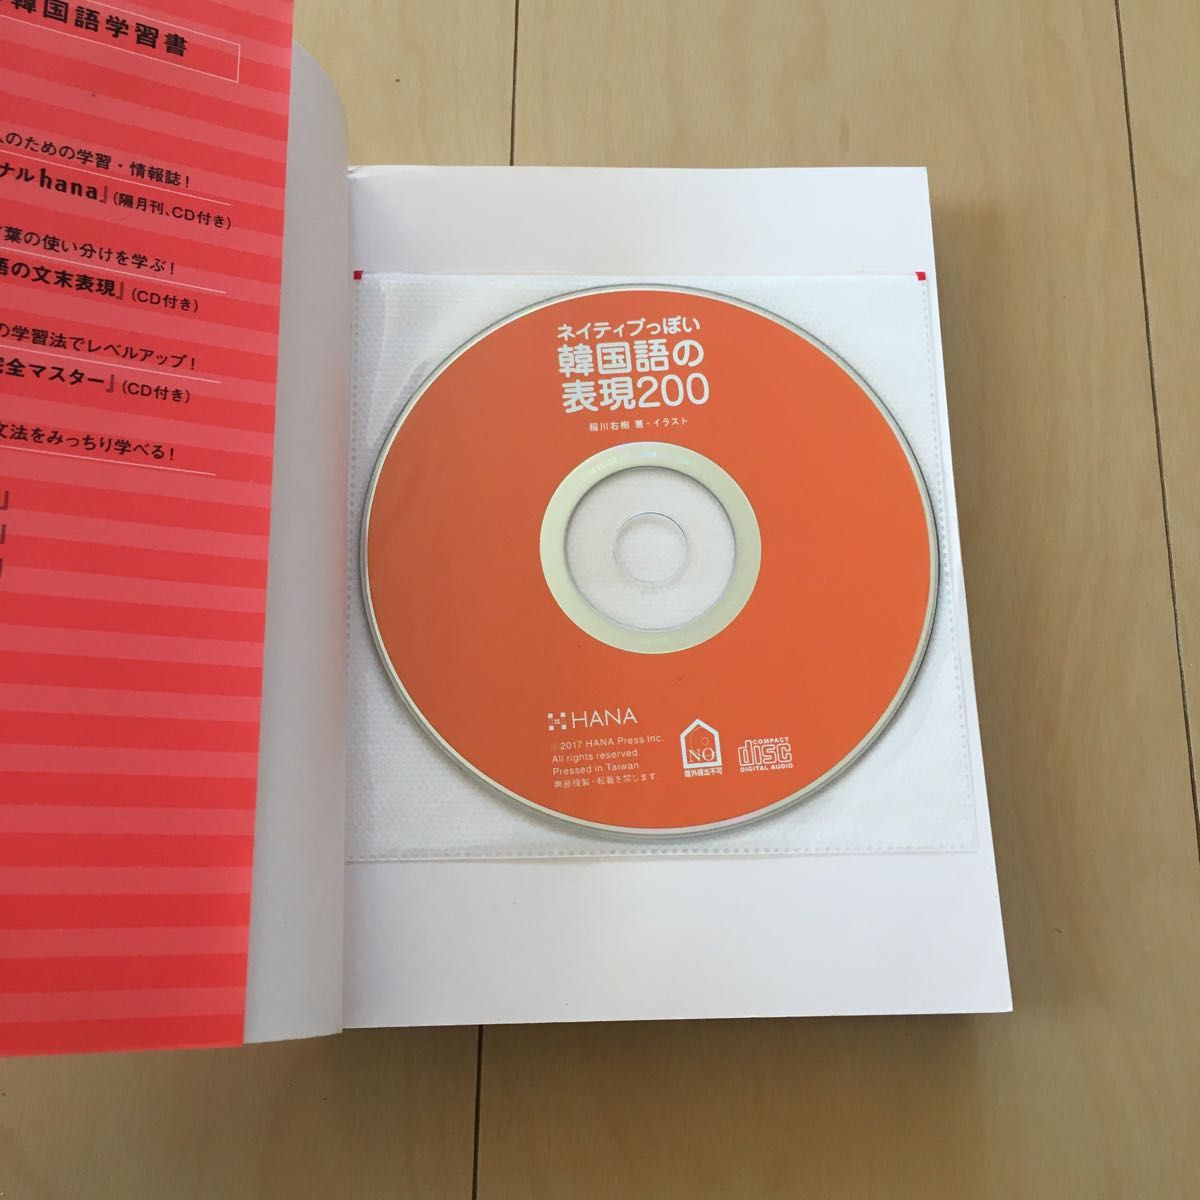 ネイティブっぽい韓国語の表現200 ゆうきの「韓国語表現力向上委員会」発！ CD付属